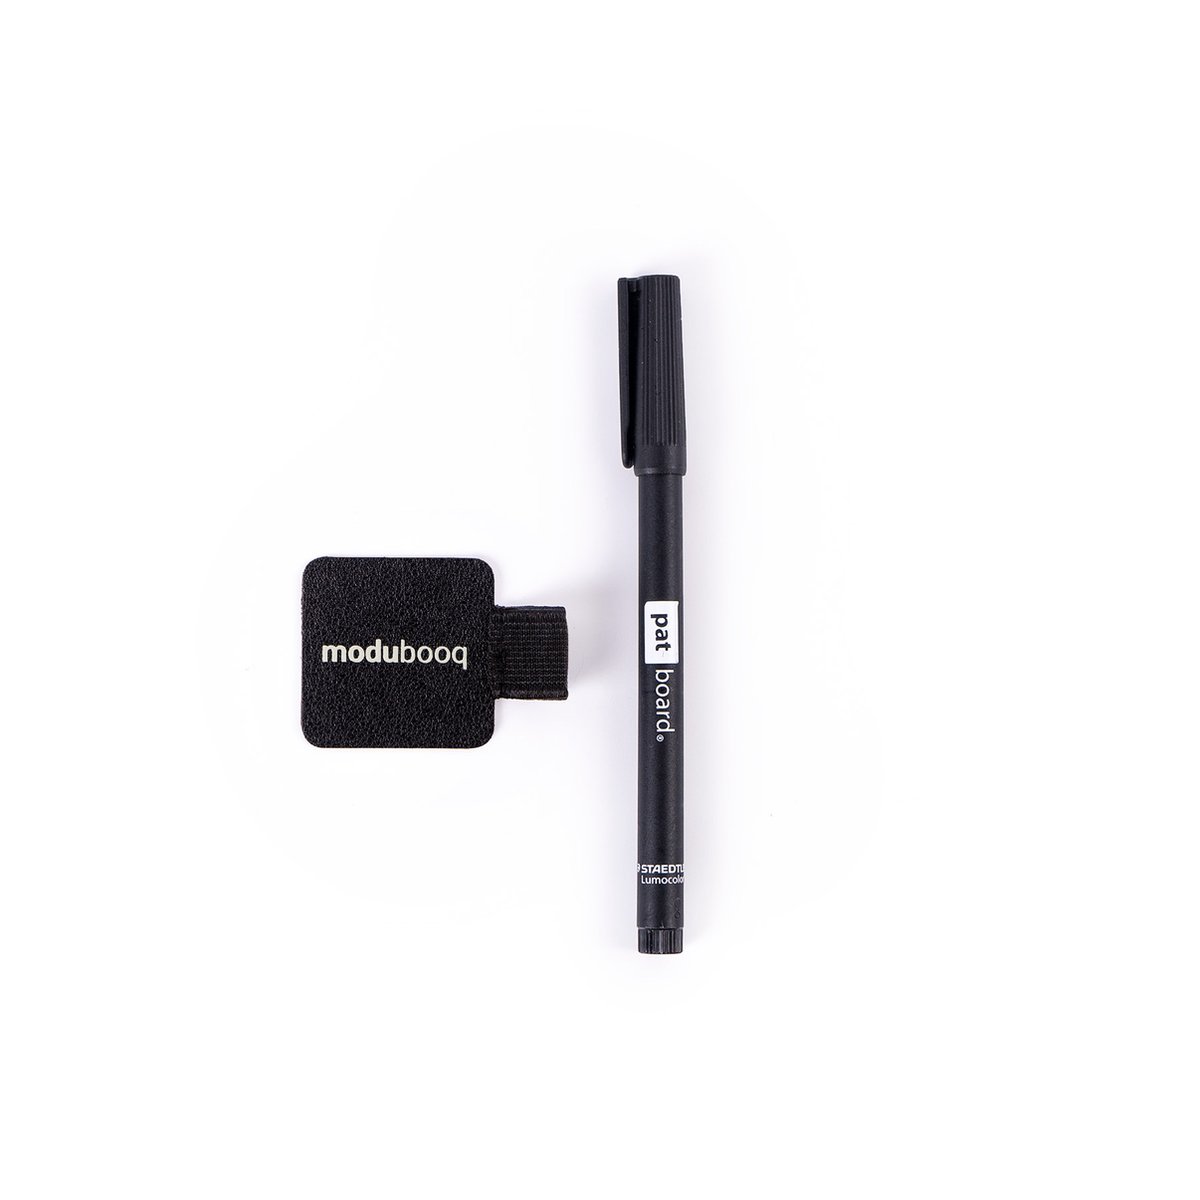 Modubooq™ - Niet-permanente marker zwart 1x (0,6mm) met elastische lus